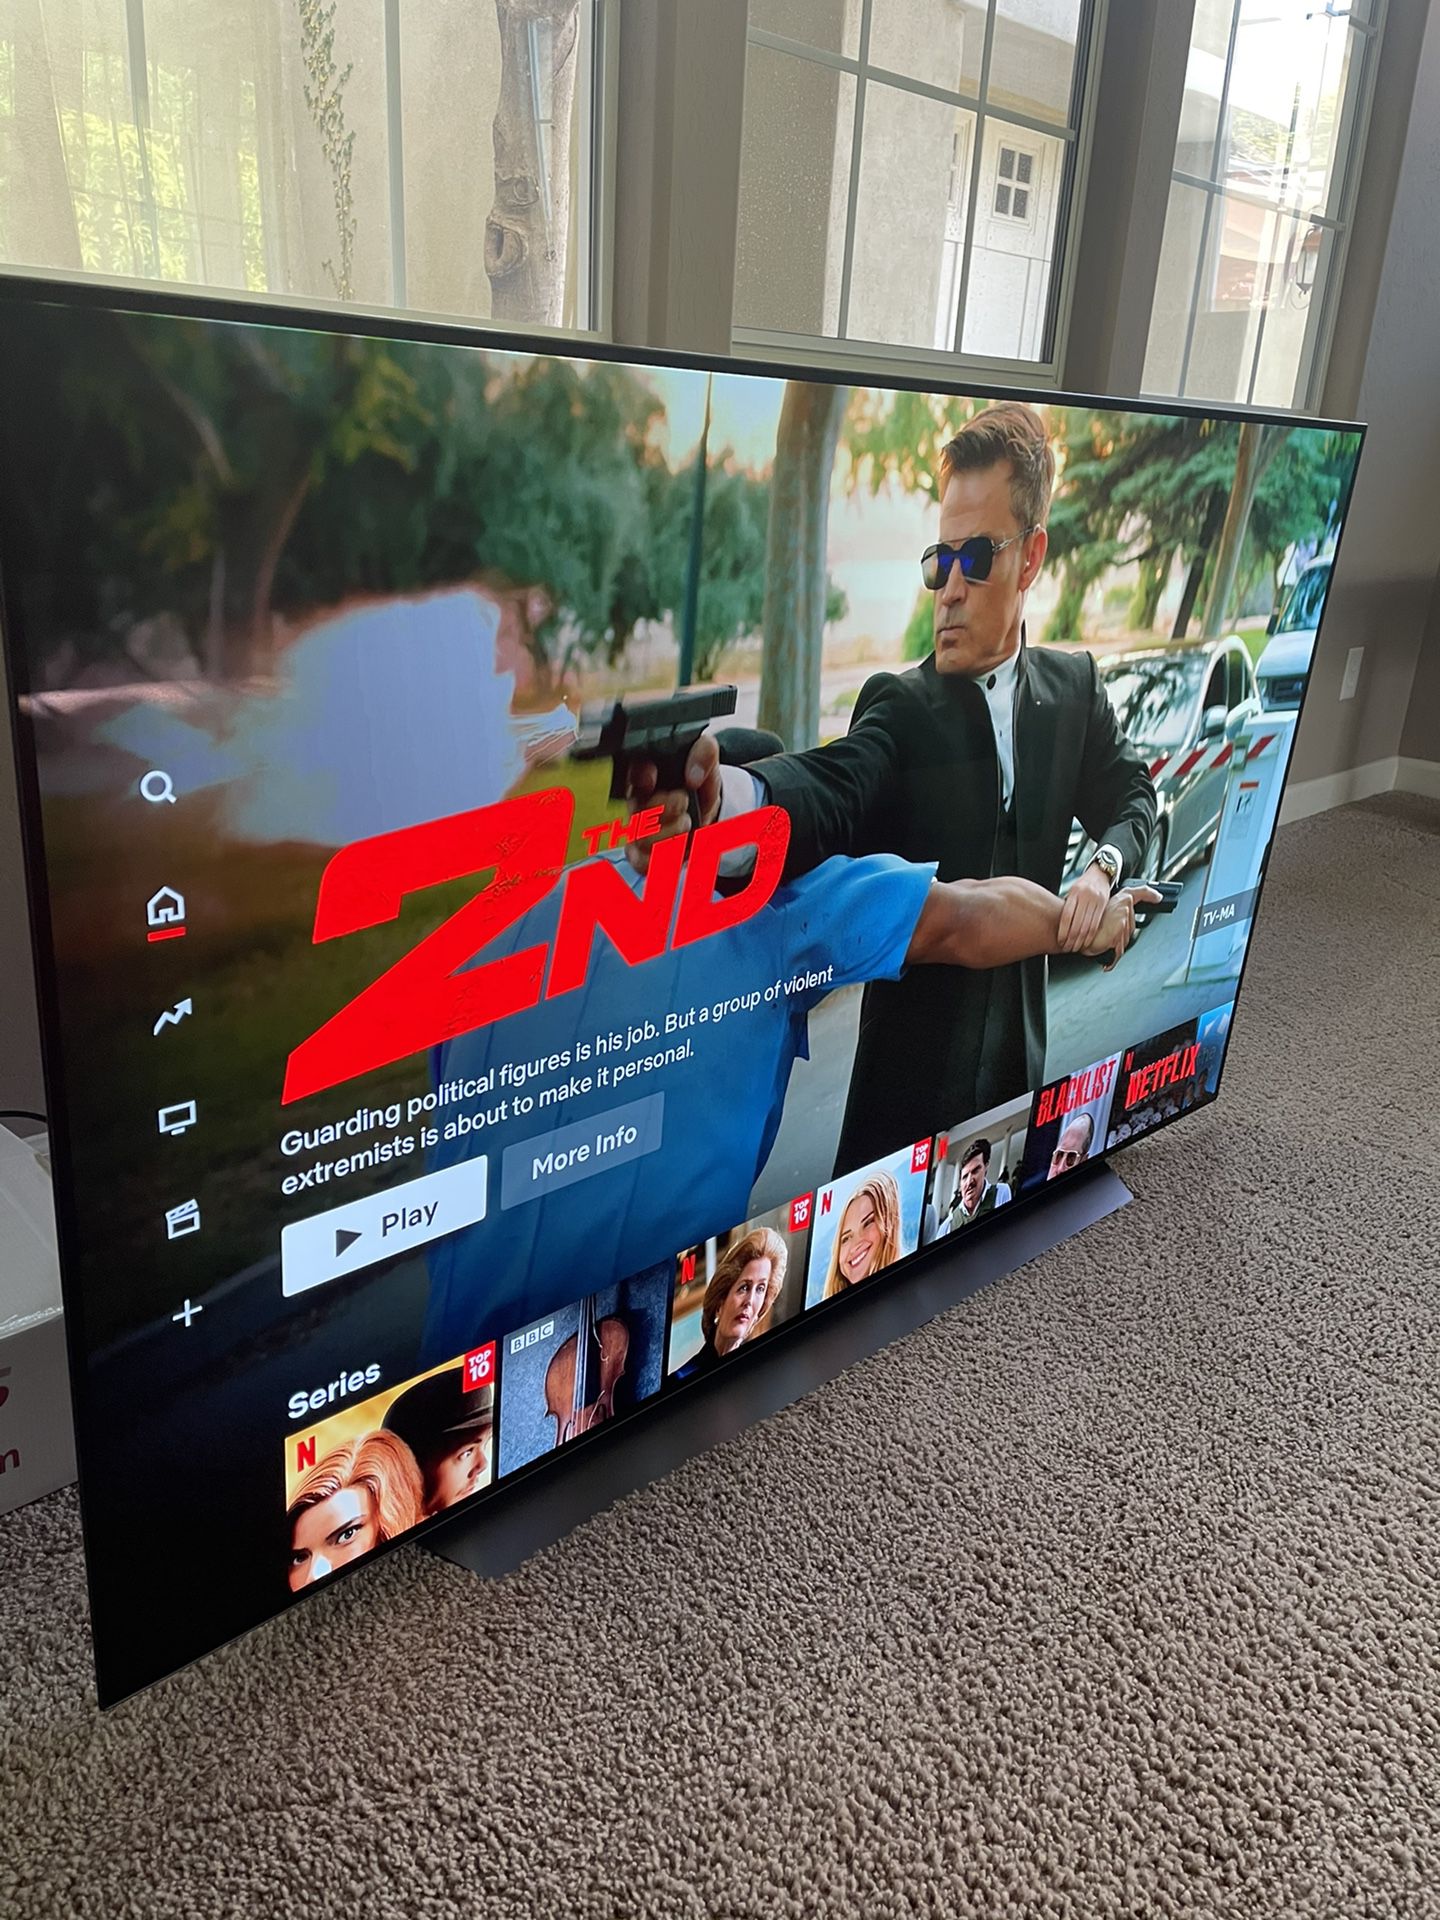 LG C9 65 OLED Smart TV